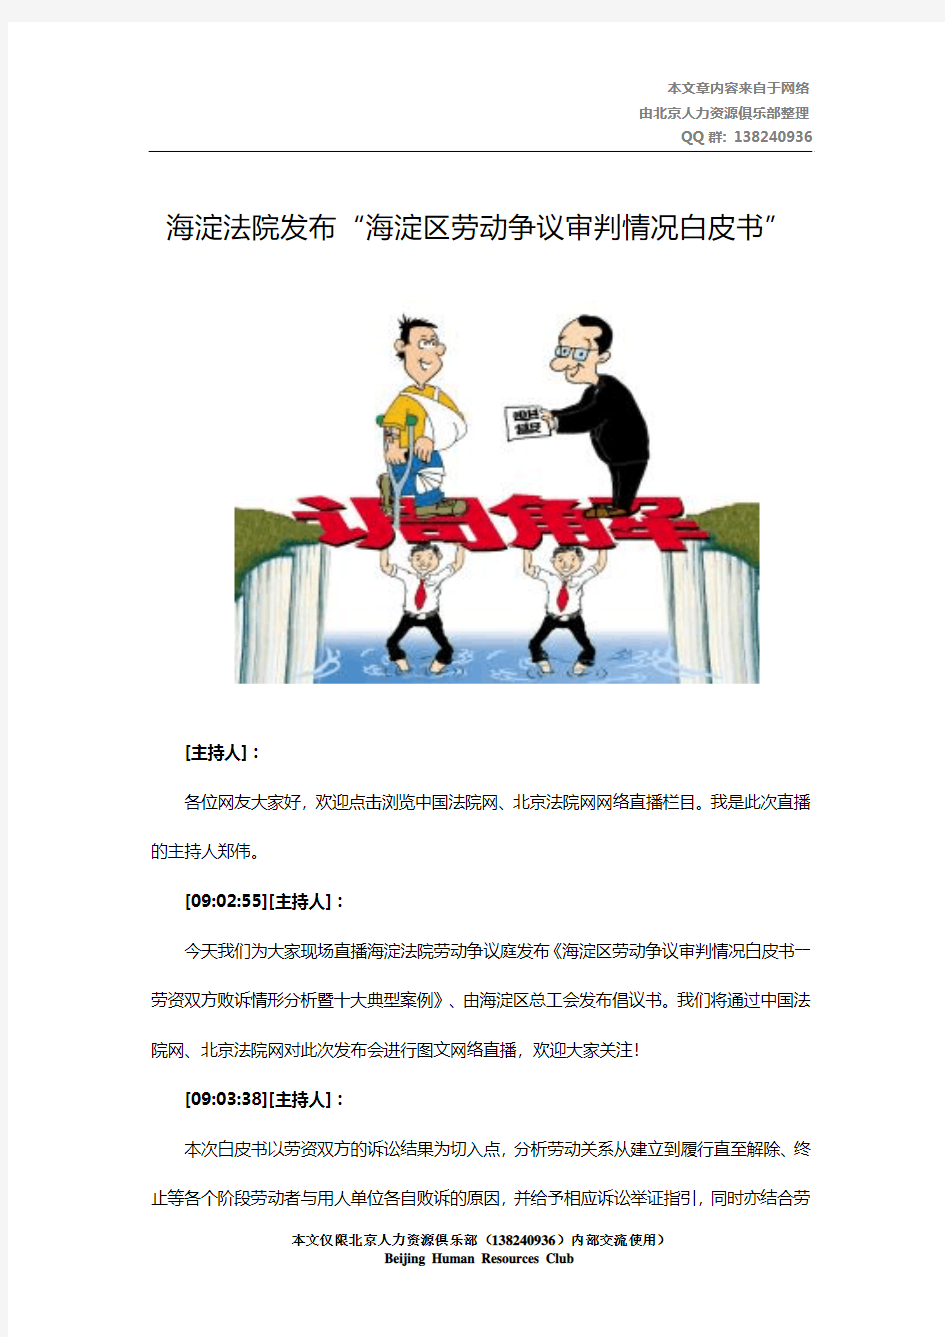 海淀法院发布“海淀区劳动争议审判情况白皮书”(2014年7月22日)